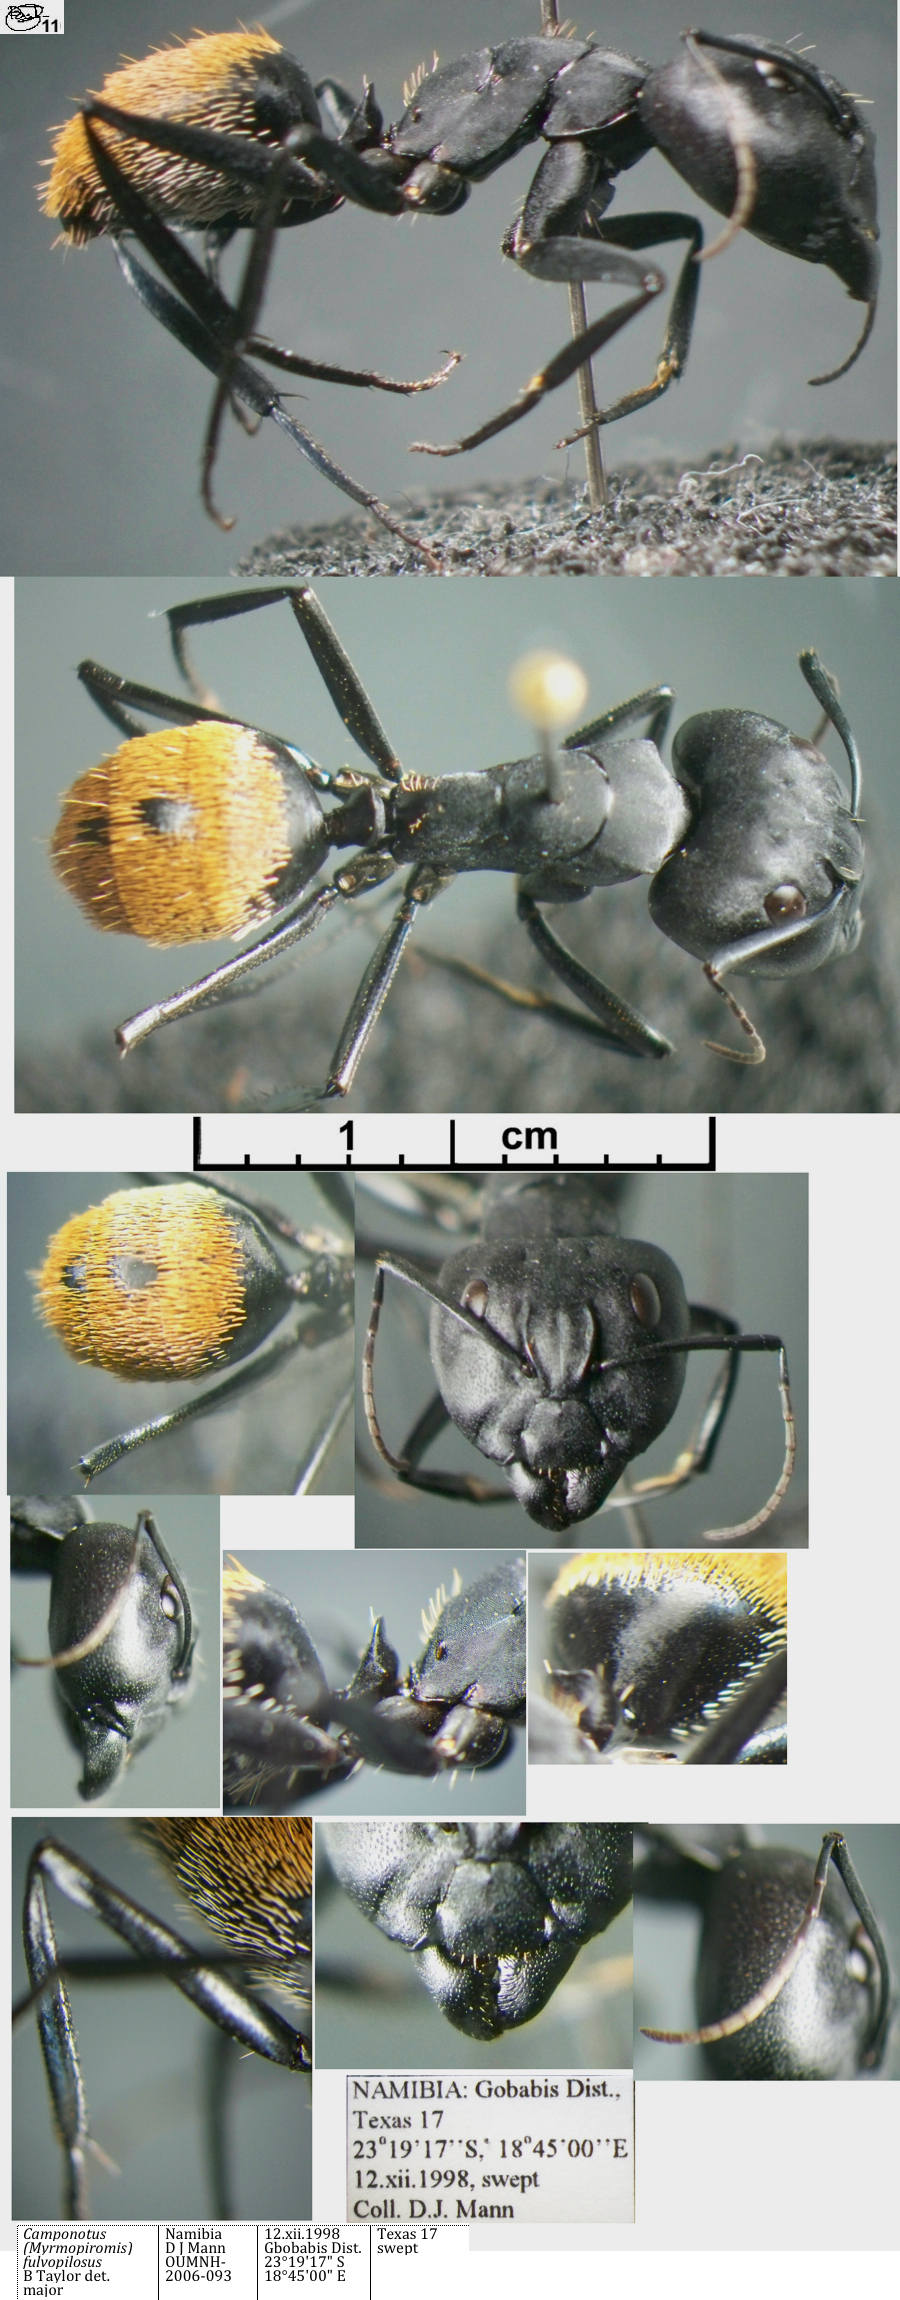 {Camponotus fulvopilosus major}